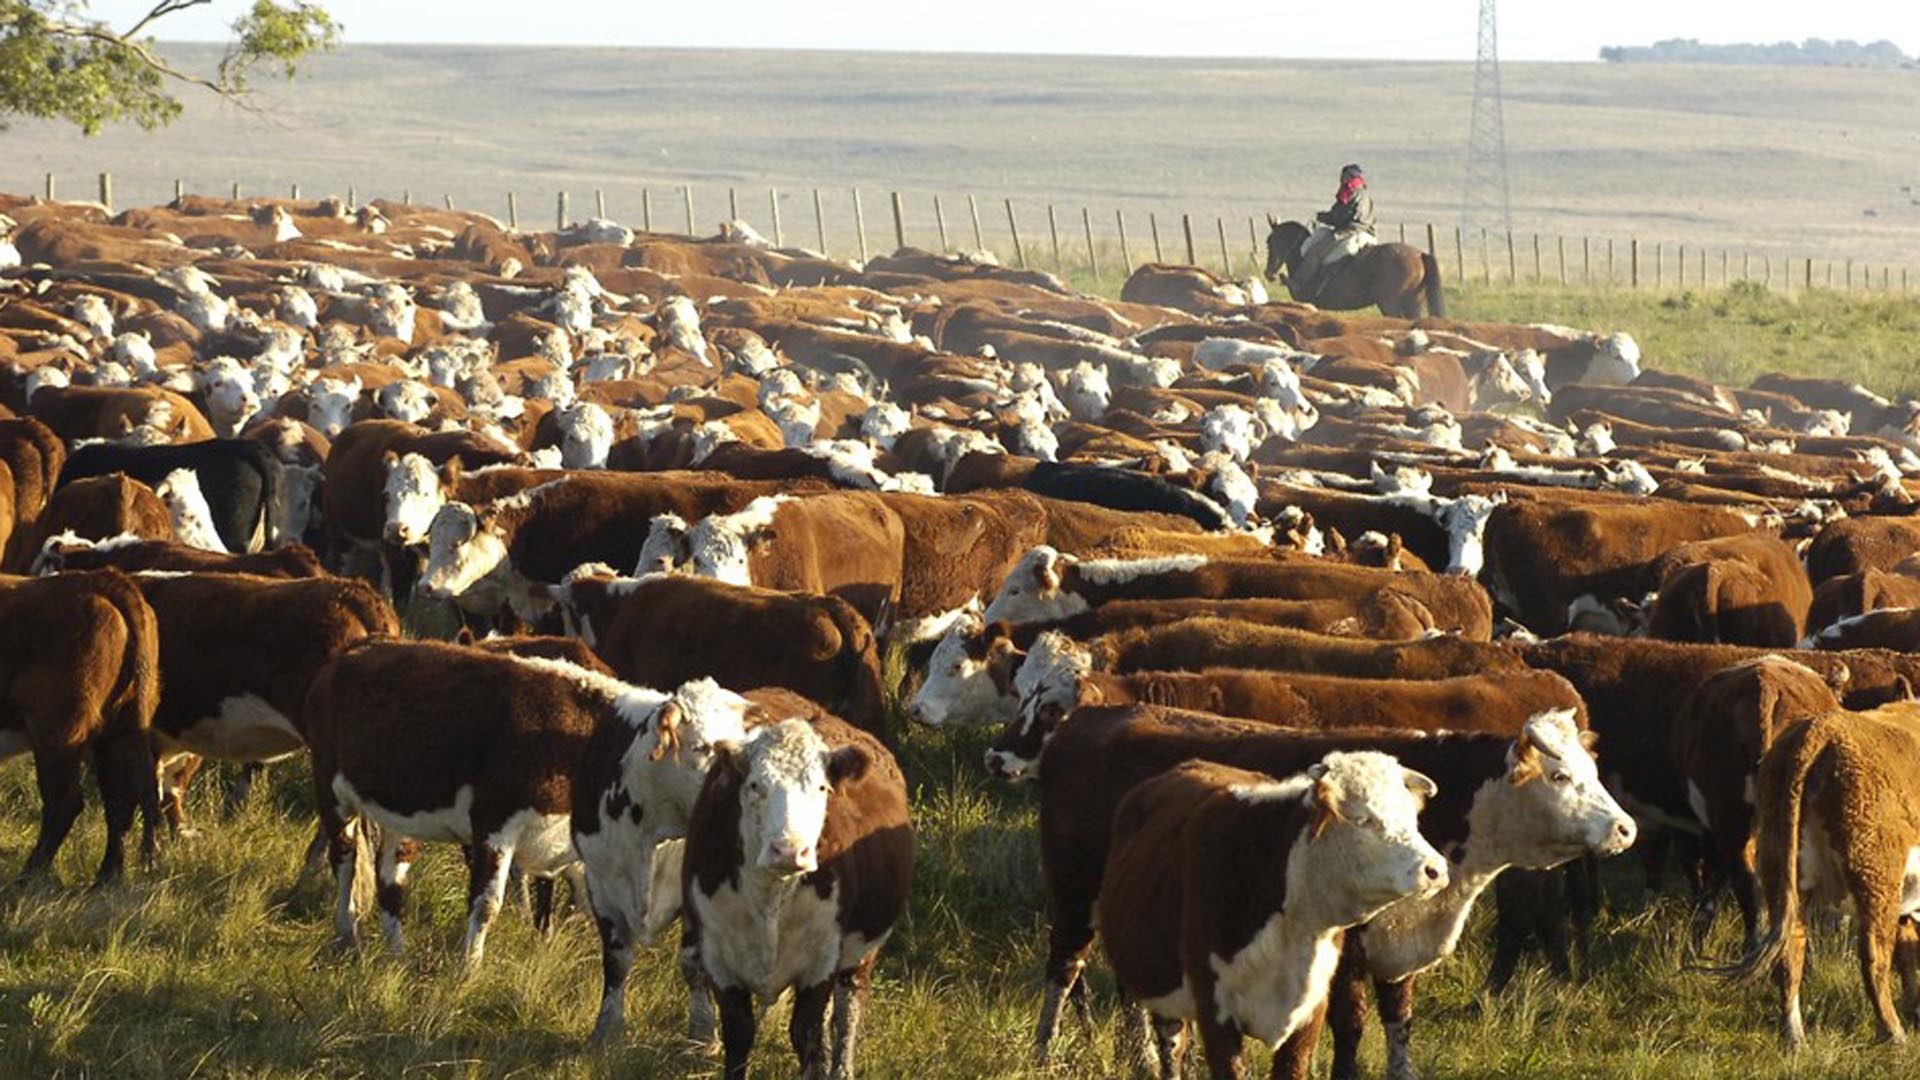  El metano no solo es generado por los combustibles fósiles, sino que además es liberado por la actividad granadera (ganado bovino y ovino), a los cuales se suman vertederos y fuentes naturales